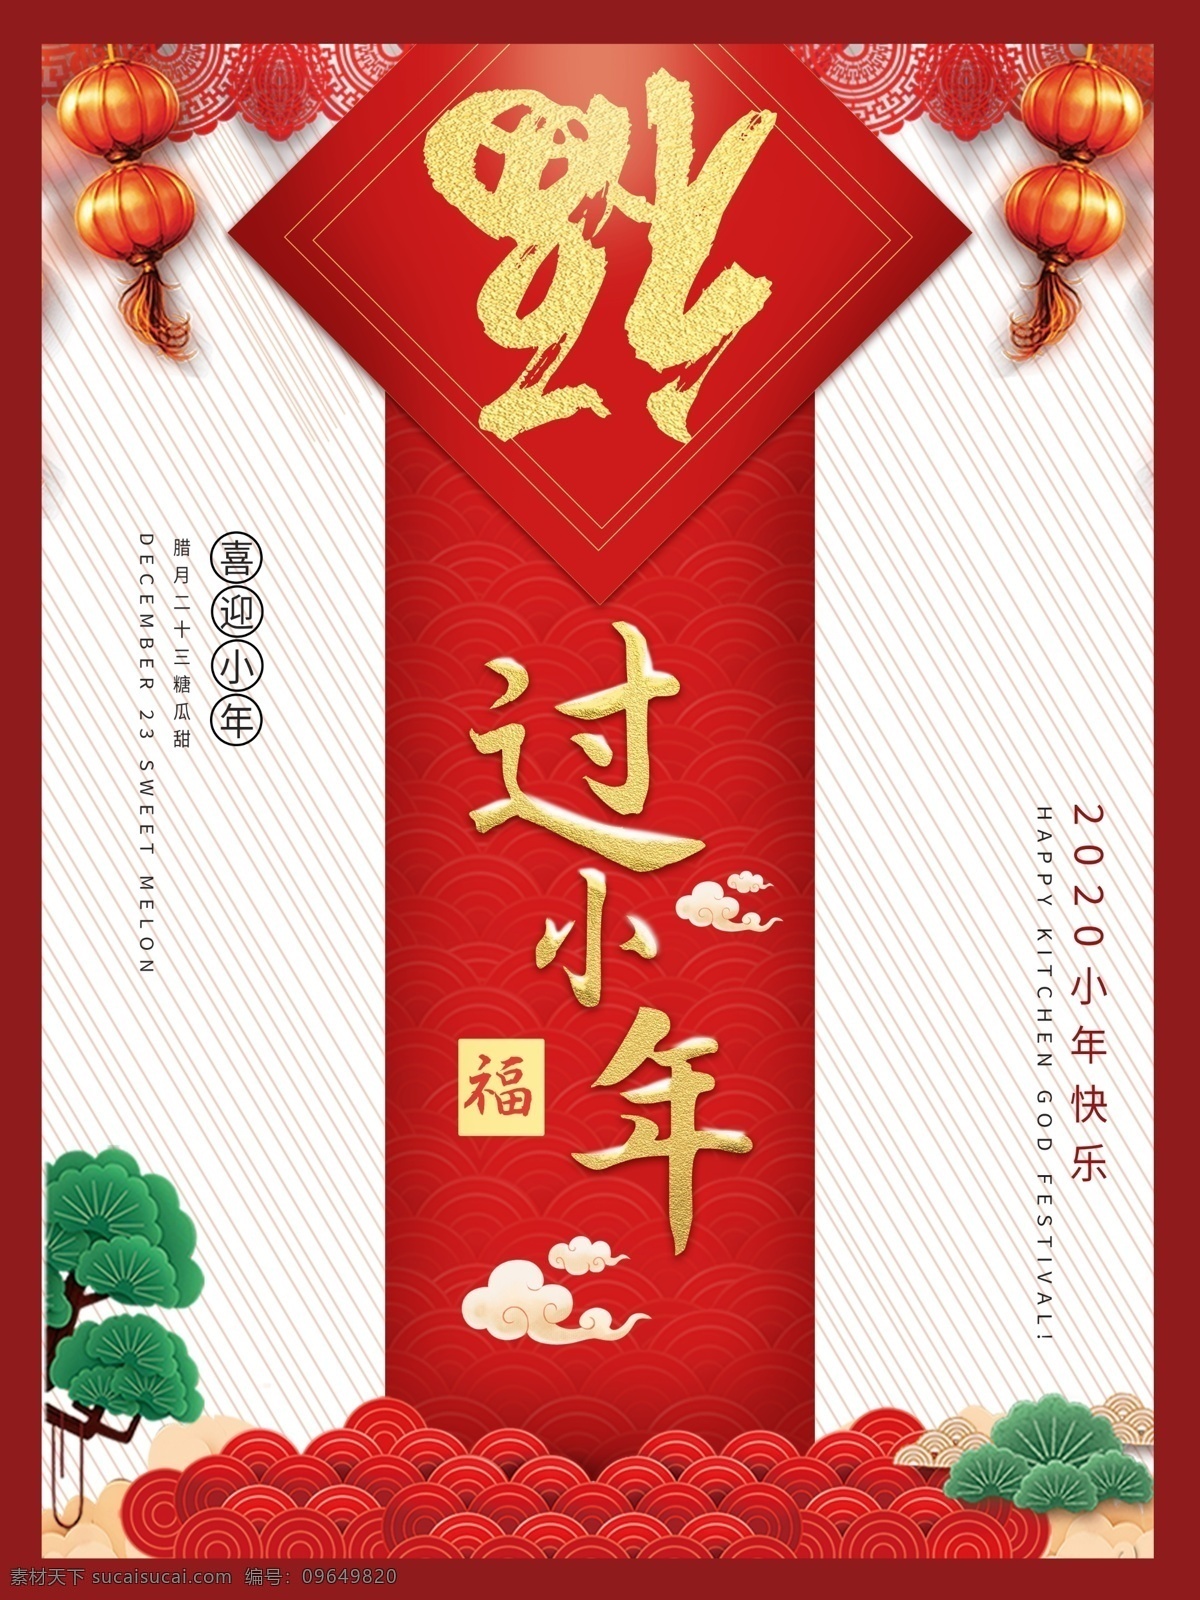 过小年 鼠年 新年 小年 腊月二十三 小年纳福 传统风格 中国传统 打折 促销 中国风 中国红 促销风 喜庆 艺术字